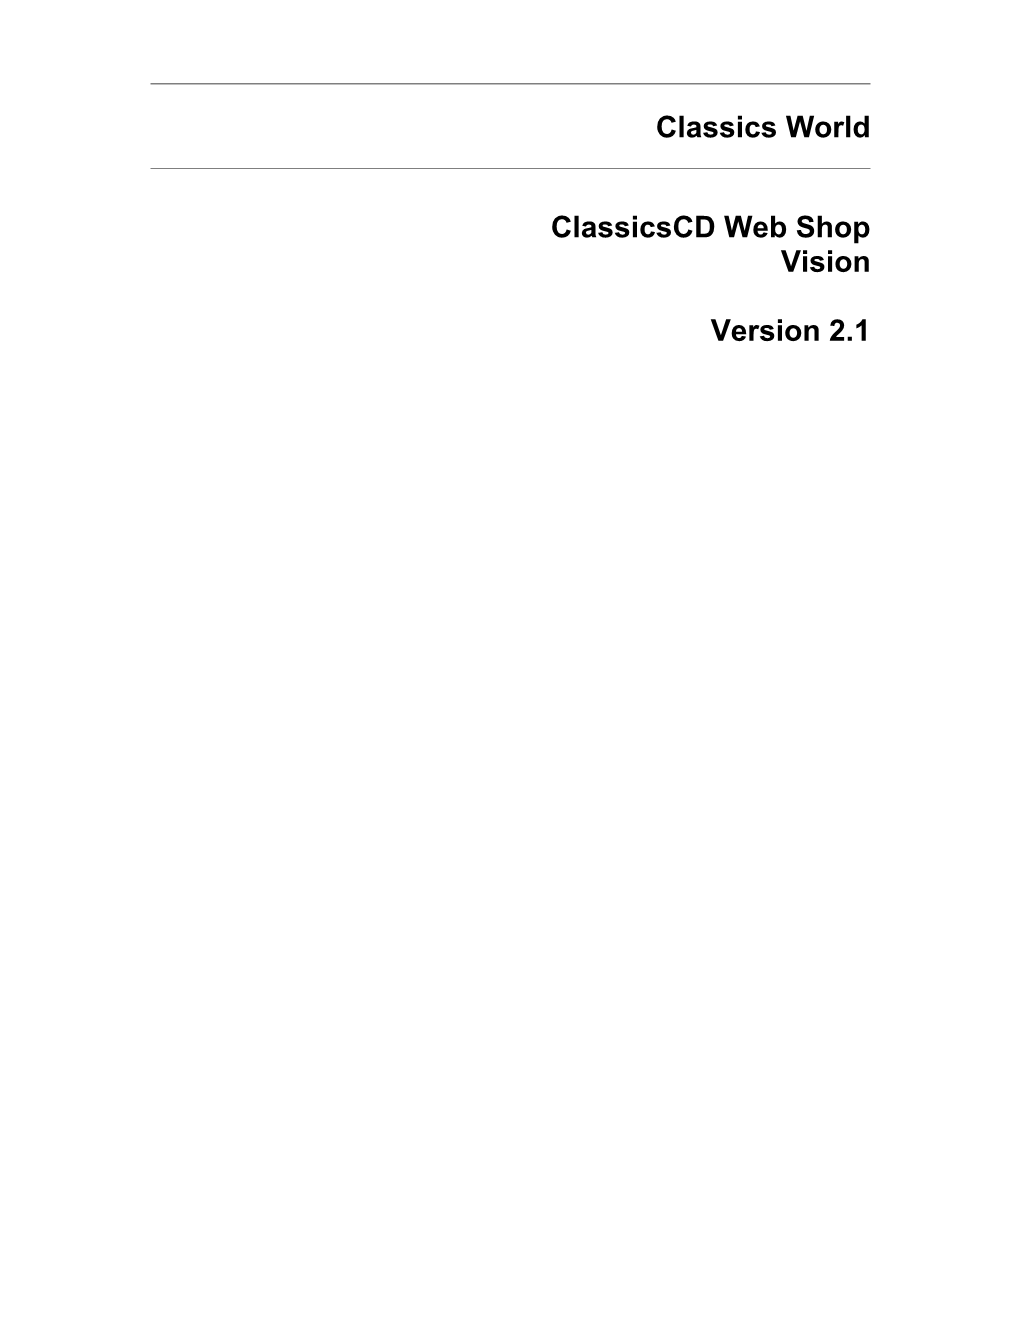 Classicscd Web Shop